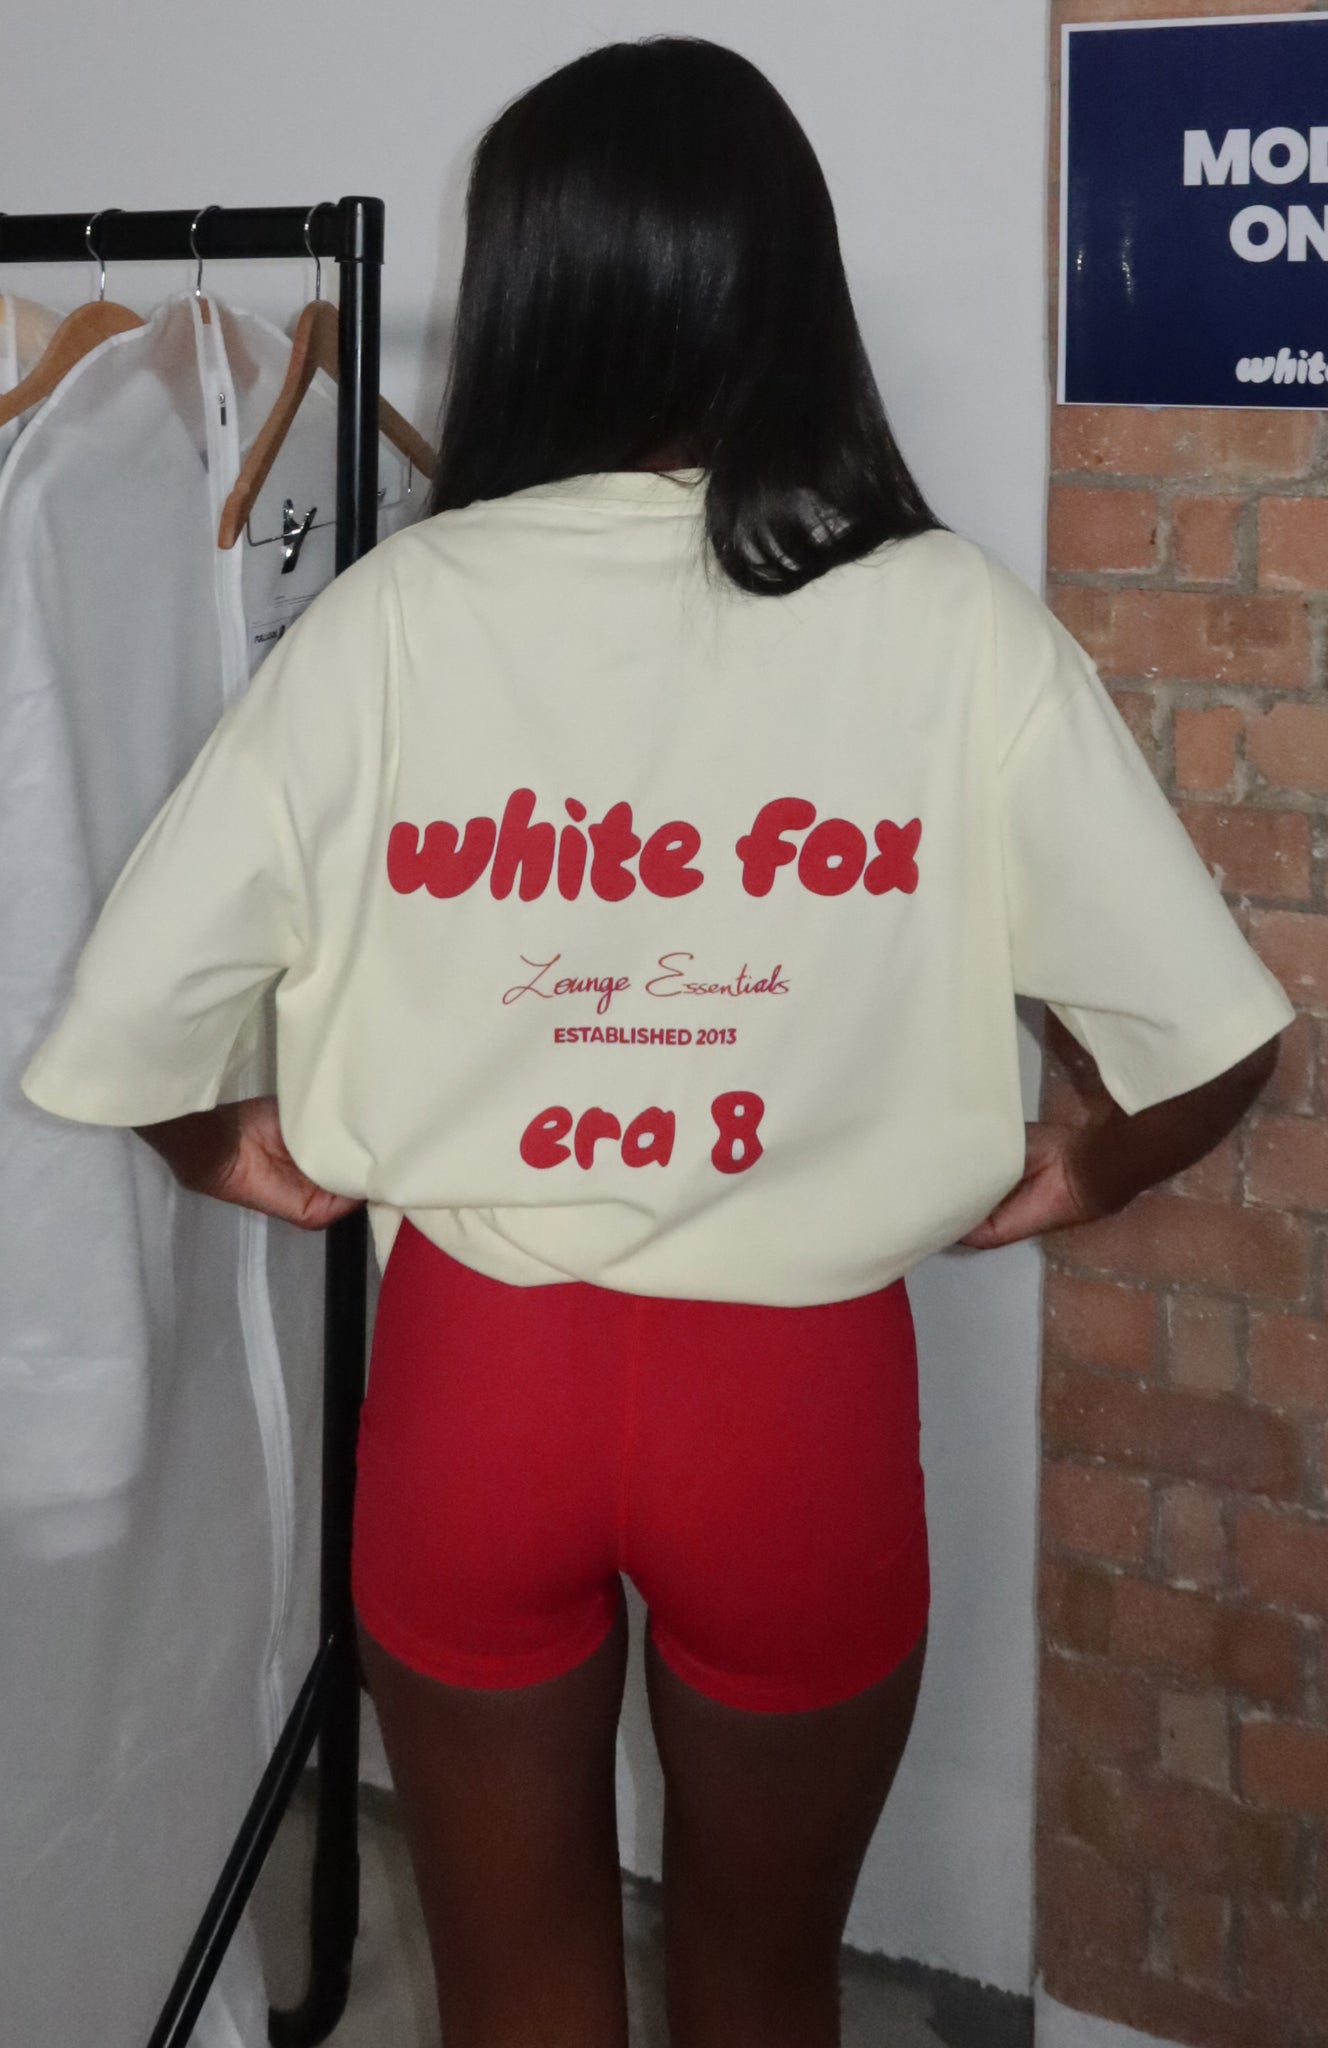 Era 8 Oversized Tee Cherry Cream White Fox